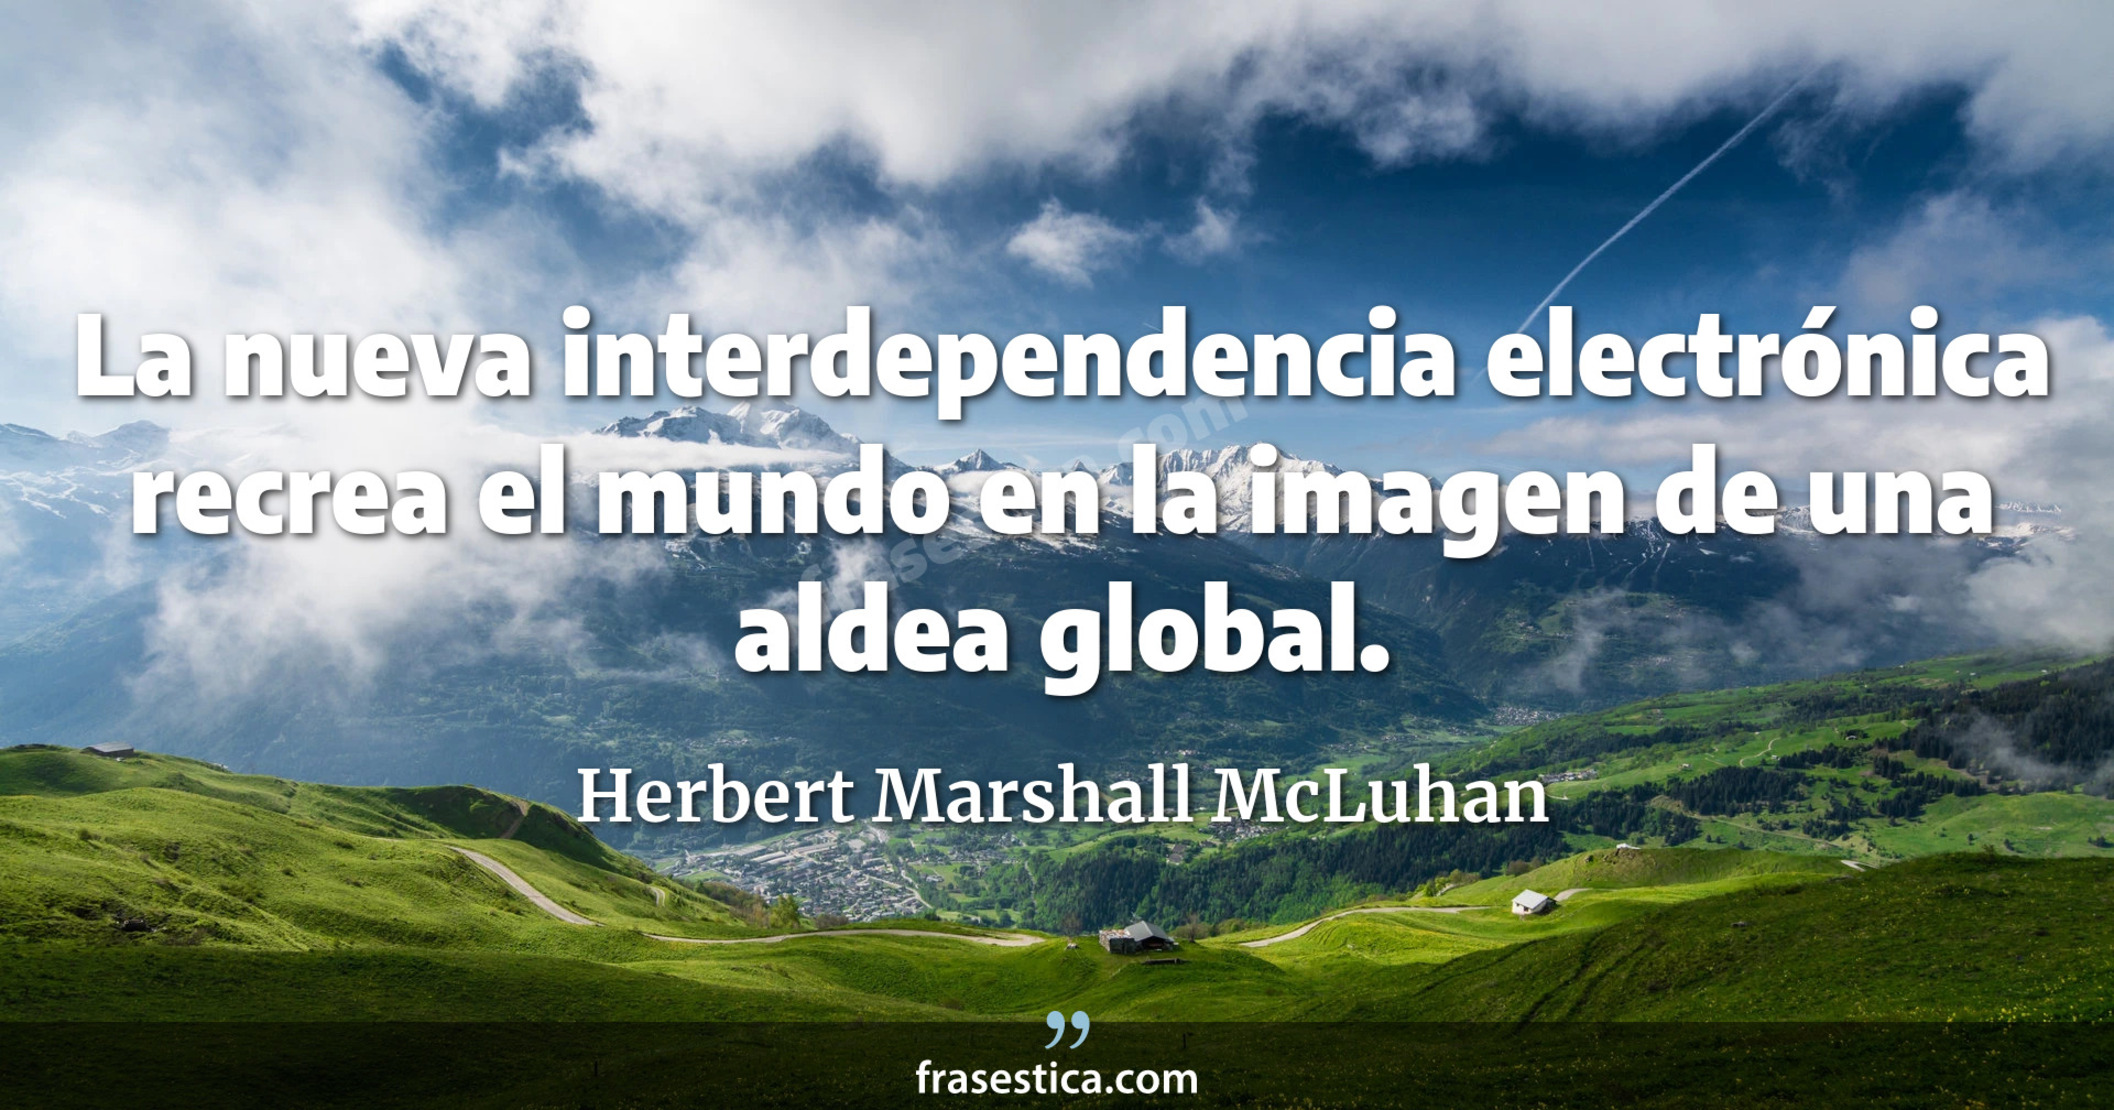 La nueva interdependencia electrónica recrea el mundo en la imagen de una aldea global. - Herbert Marshall McLuhan